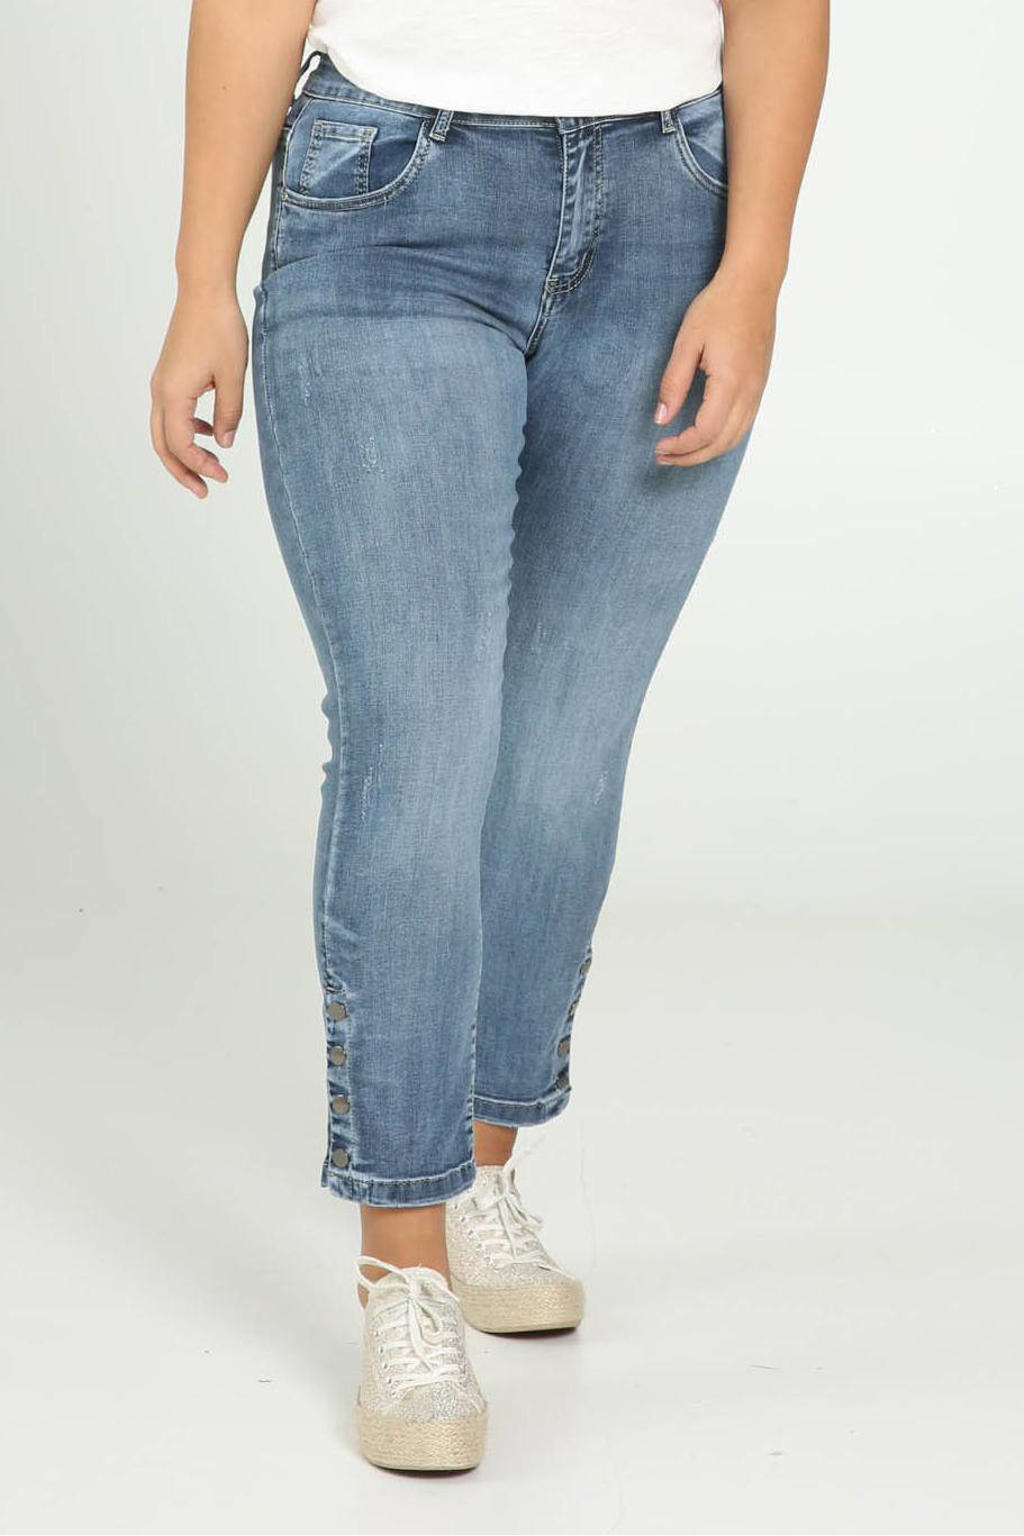 Blauwe dames Paprika slim fit jeans van denim met regular waist